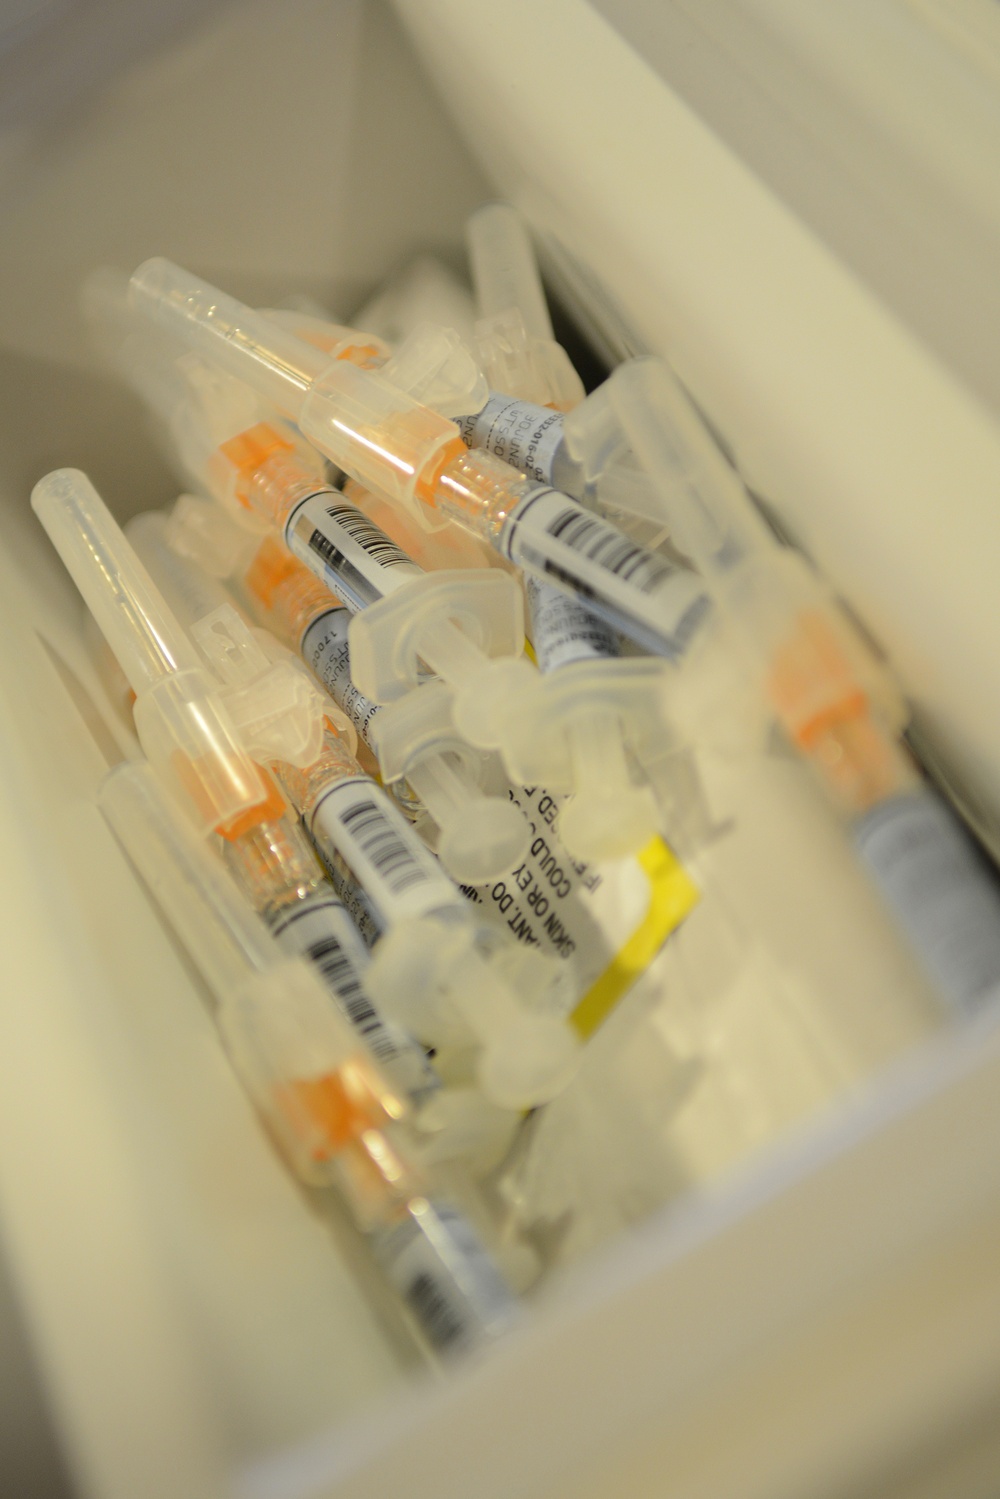 Laughlin Clinic offering flu shots